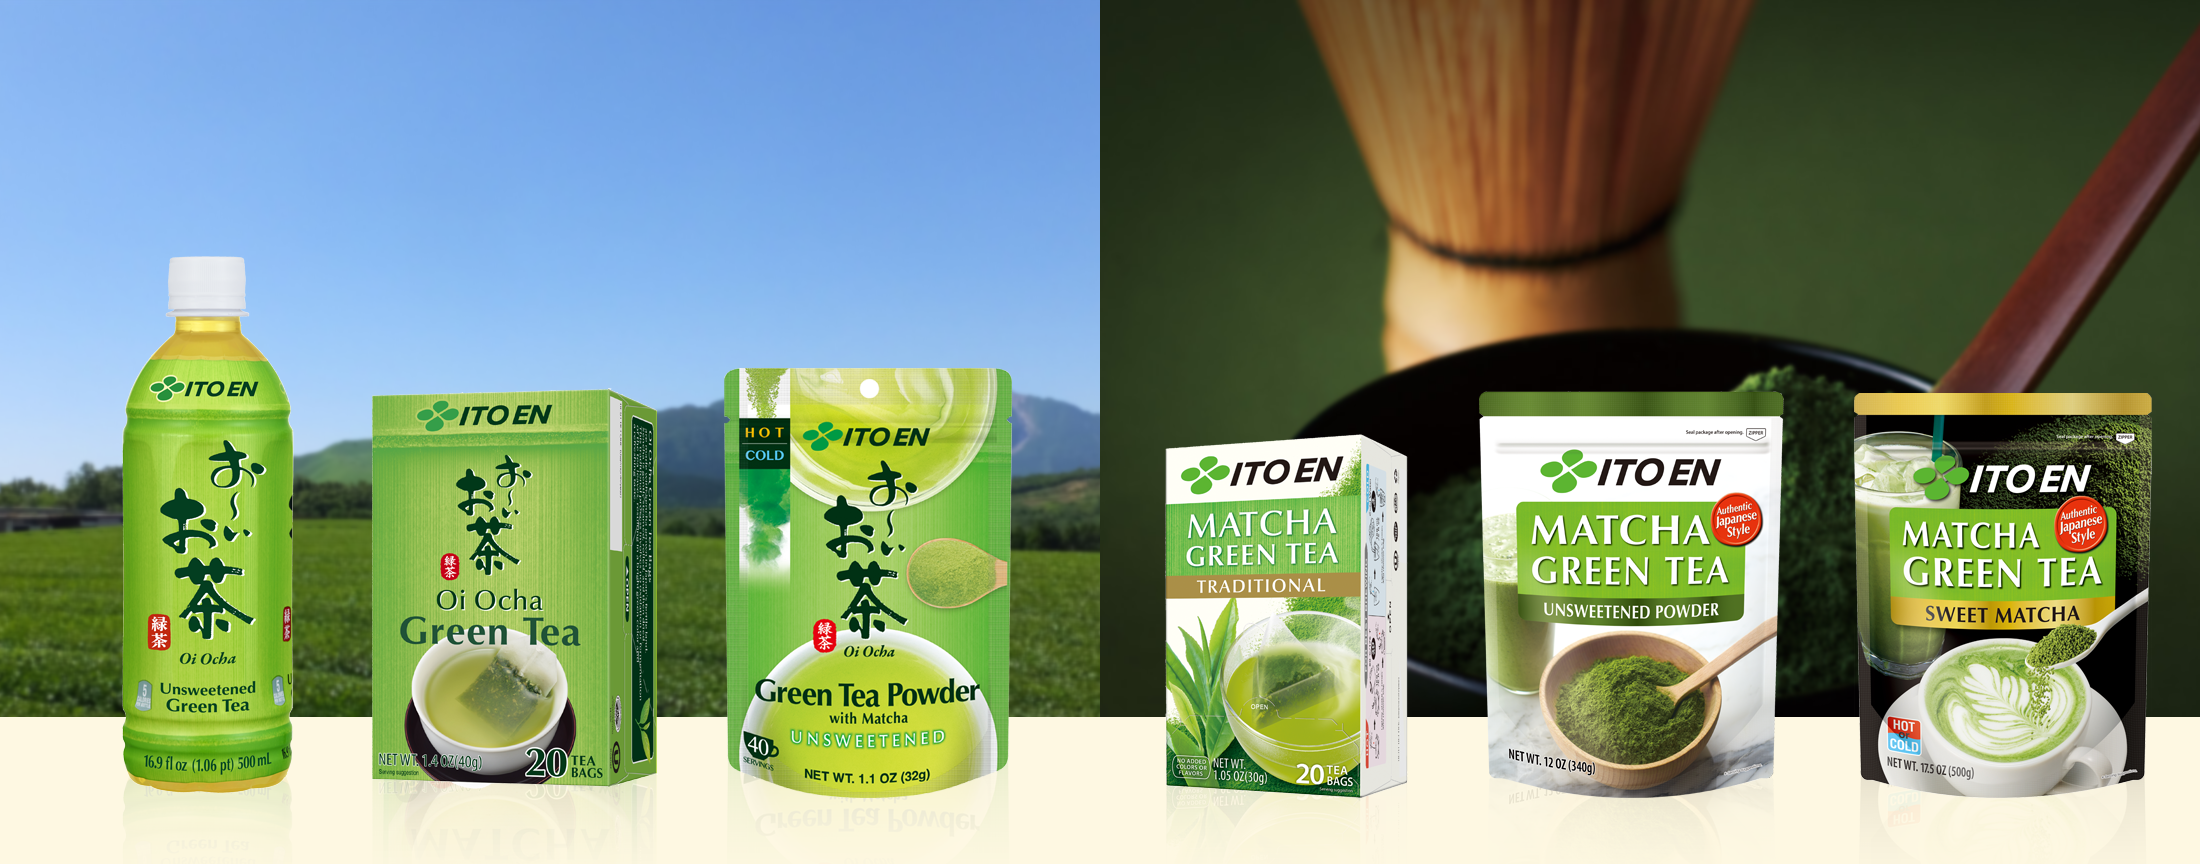 ITO EN's Green Tea Brand